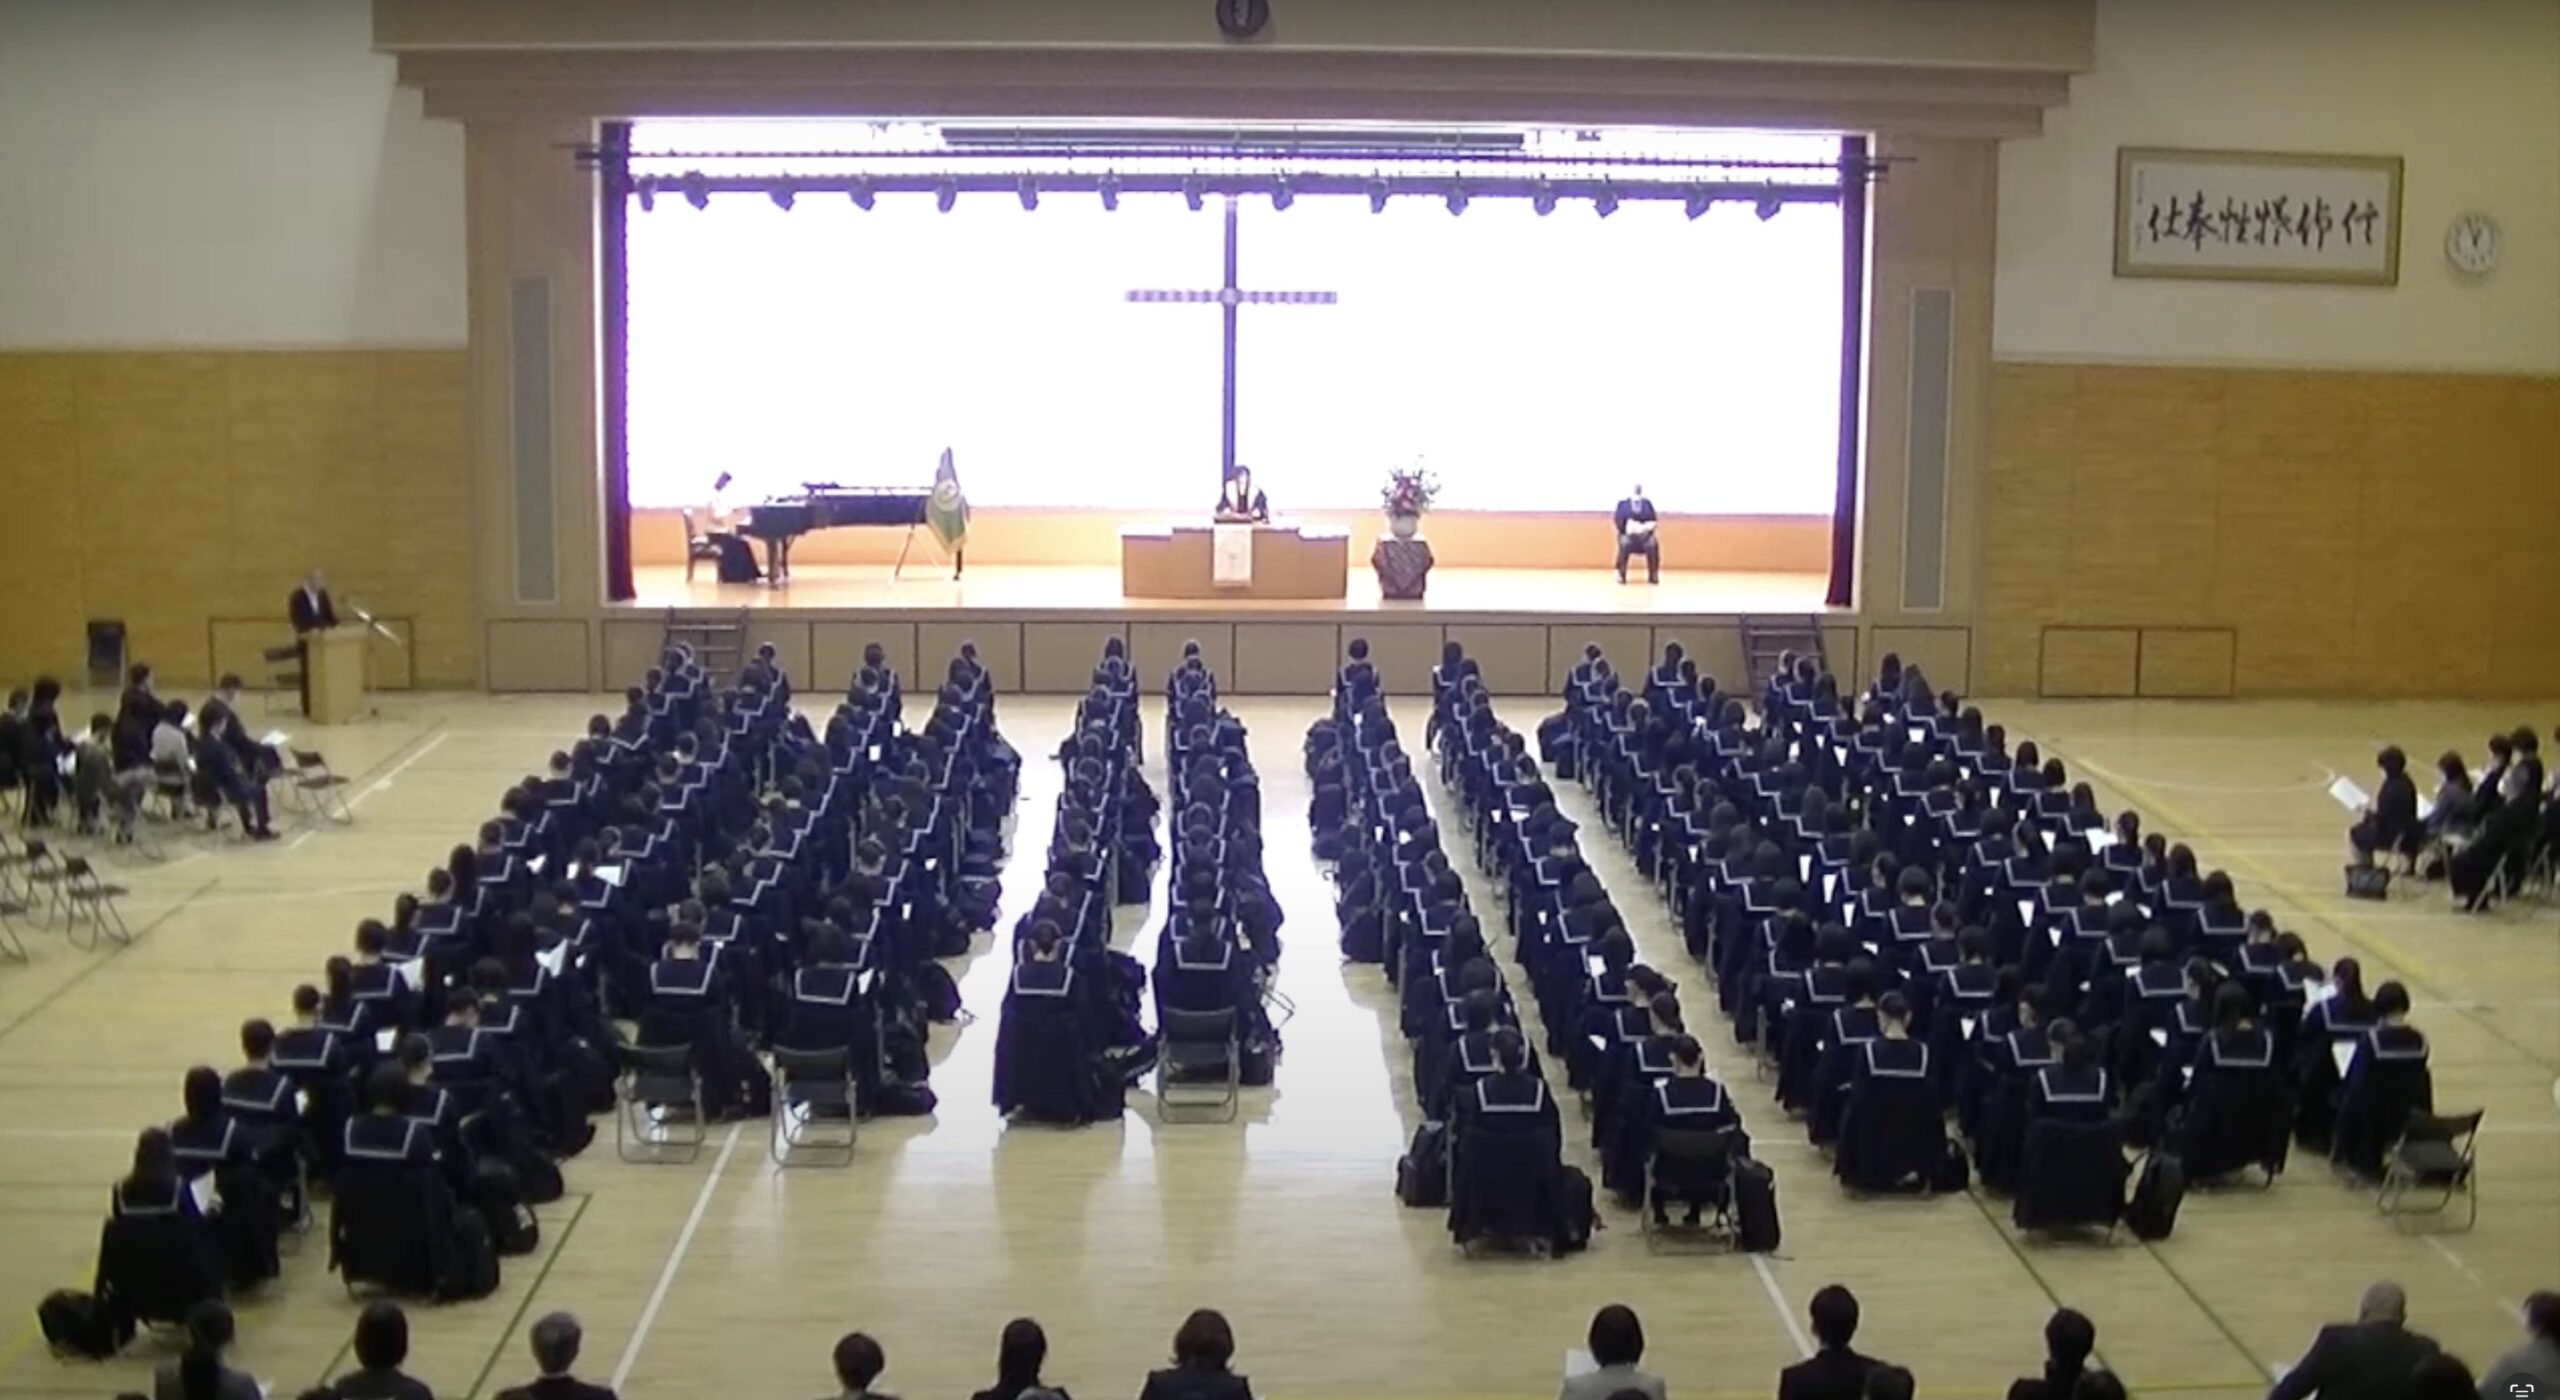 4月7日(金)遺愛女子中学・高等学校『入学礼拝式』が挙行されます。